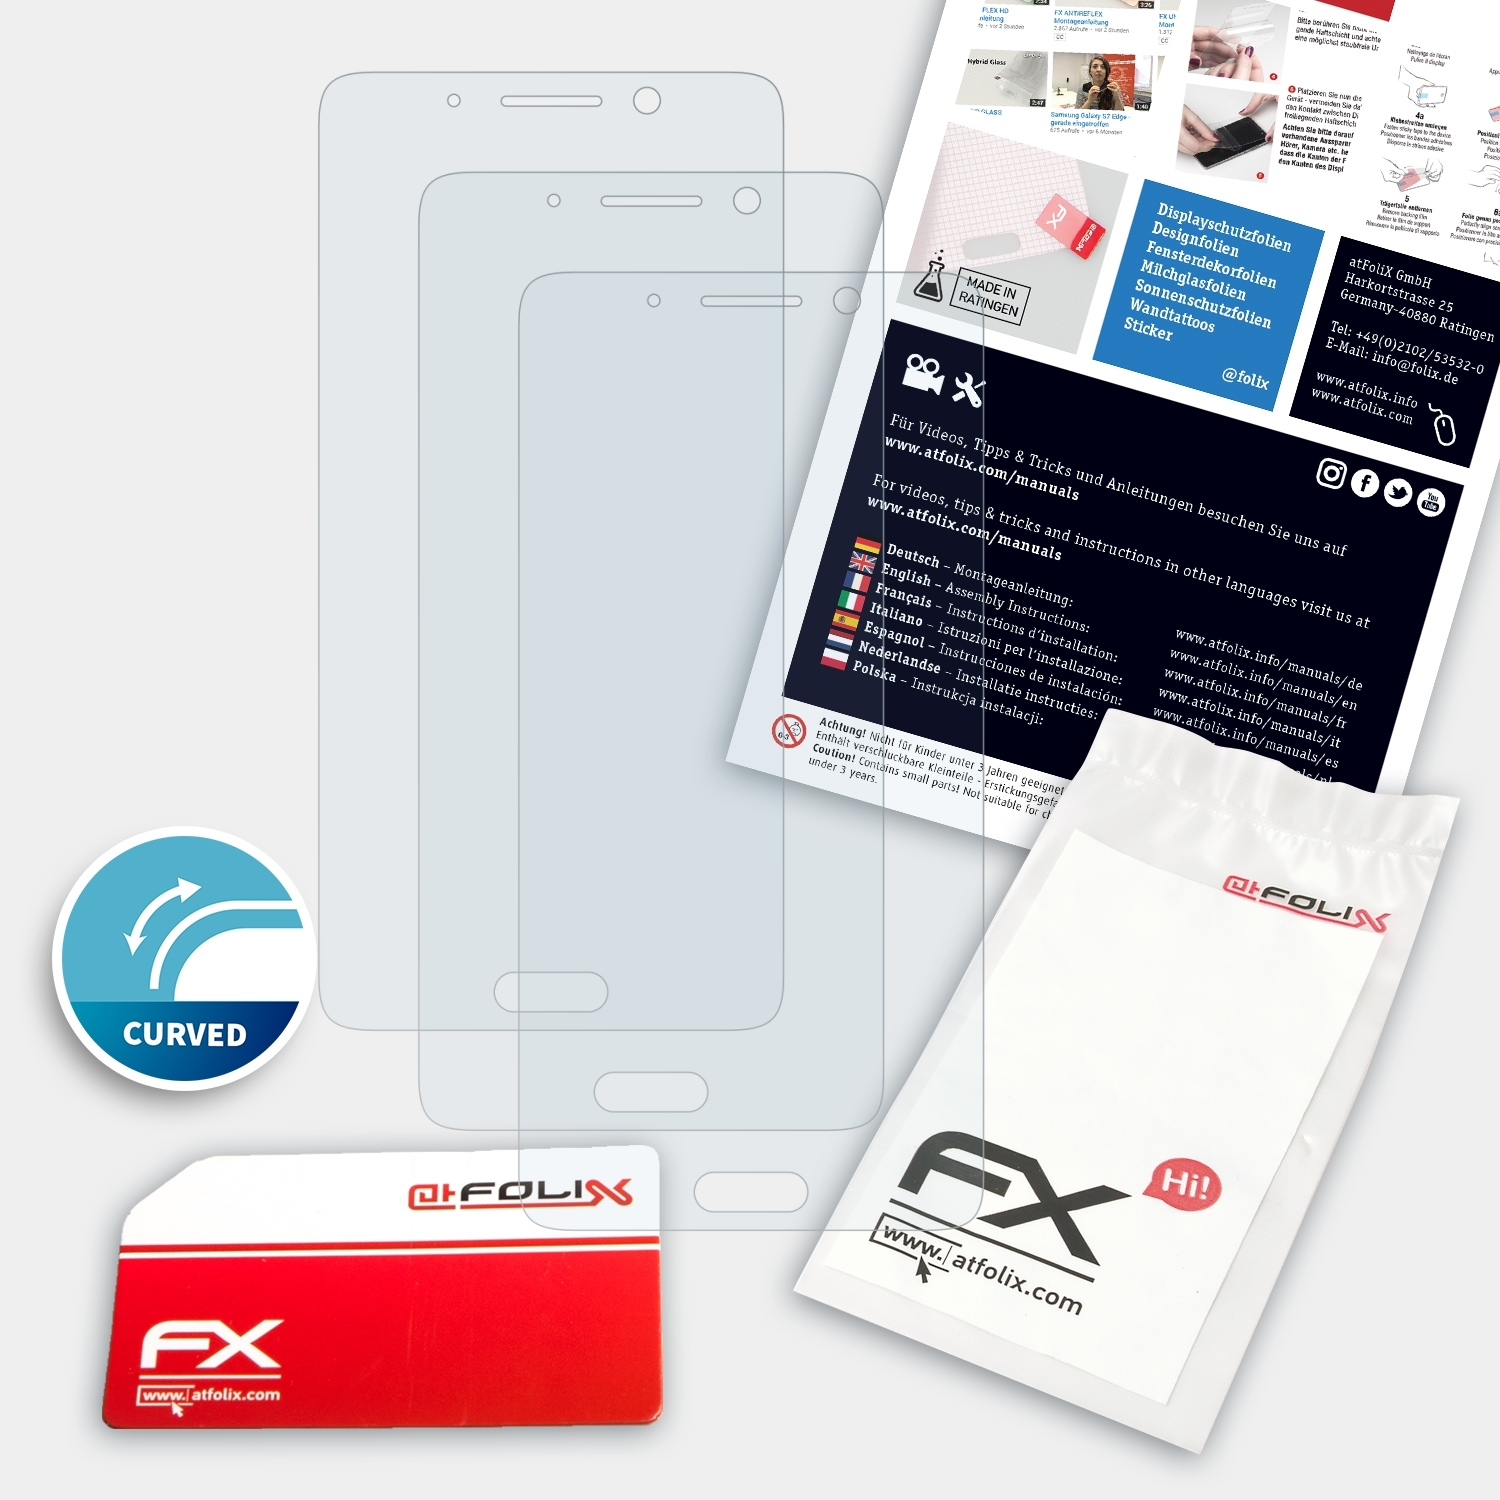 9 3x ATFOLIX Huawei Mate Displayschutz(für Pro) FX-ActiFleX